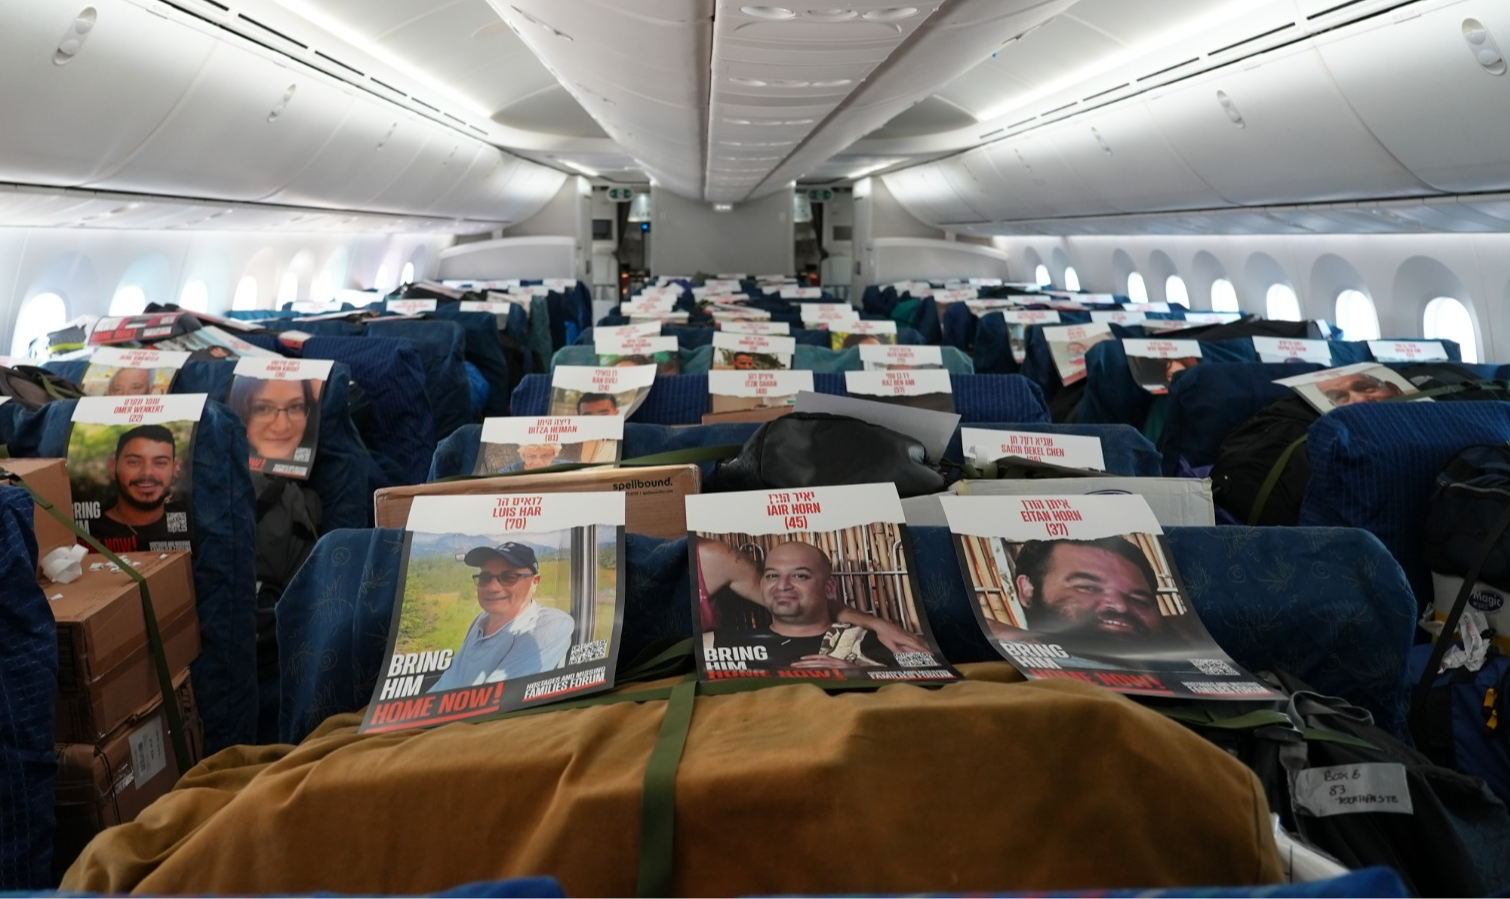 Além de pedir informação para população de Khan Younes, israelenses também apelam e instalam fotos de desaparecidos em assentos de avião